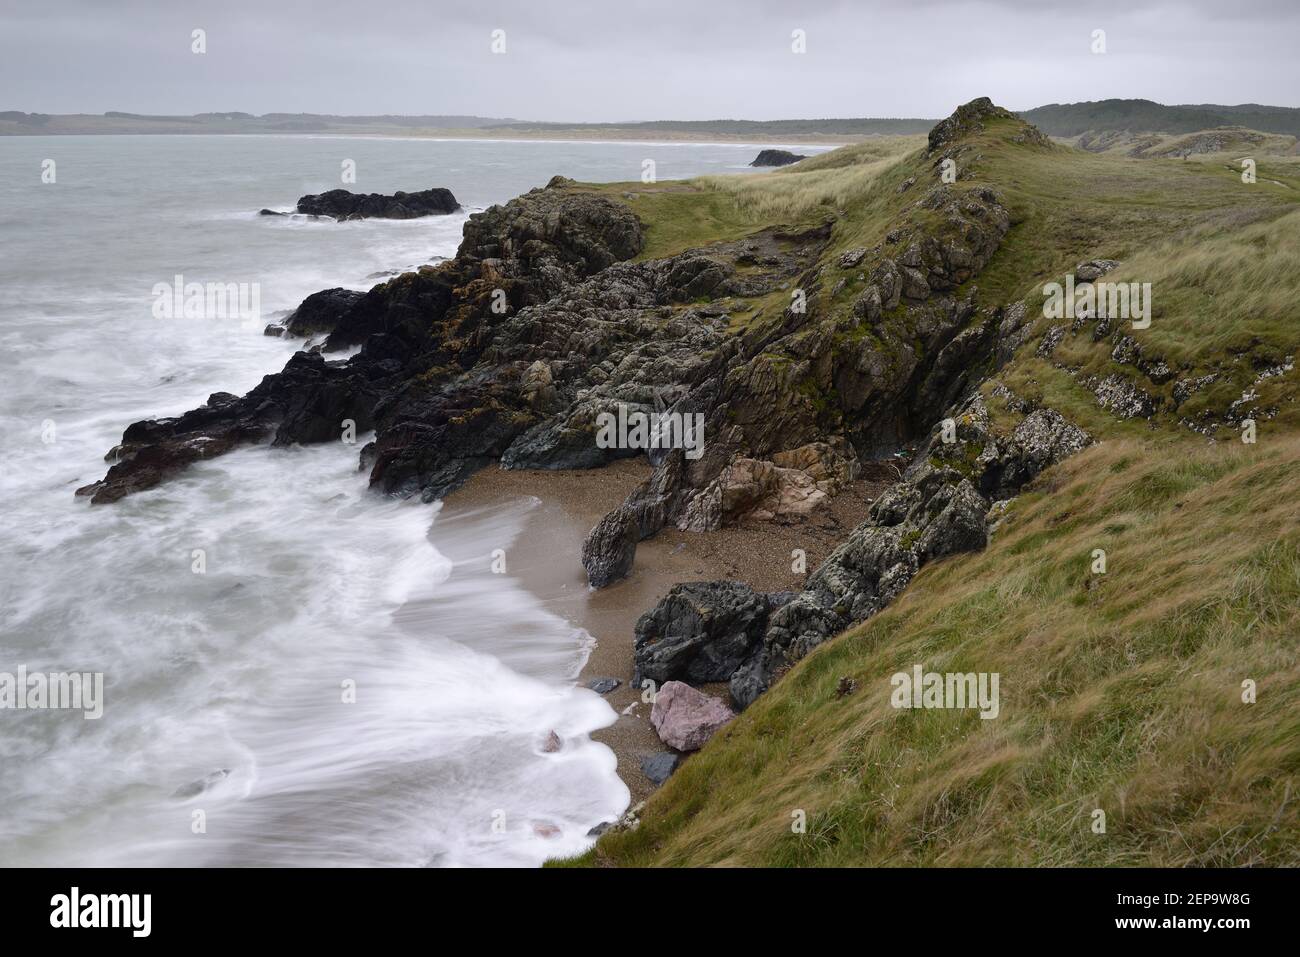 La marea entrante che lava una spiaggia sull'isola di Llanddwyn, Anglesey, Galles. Foto Stock